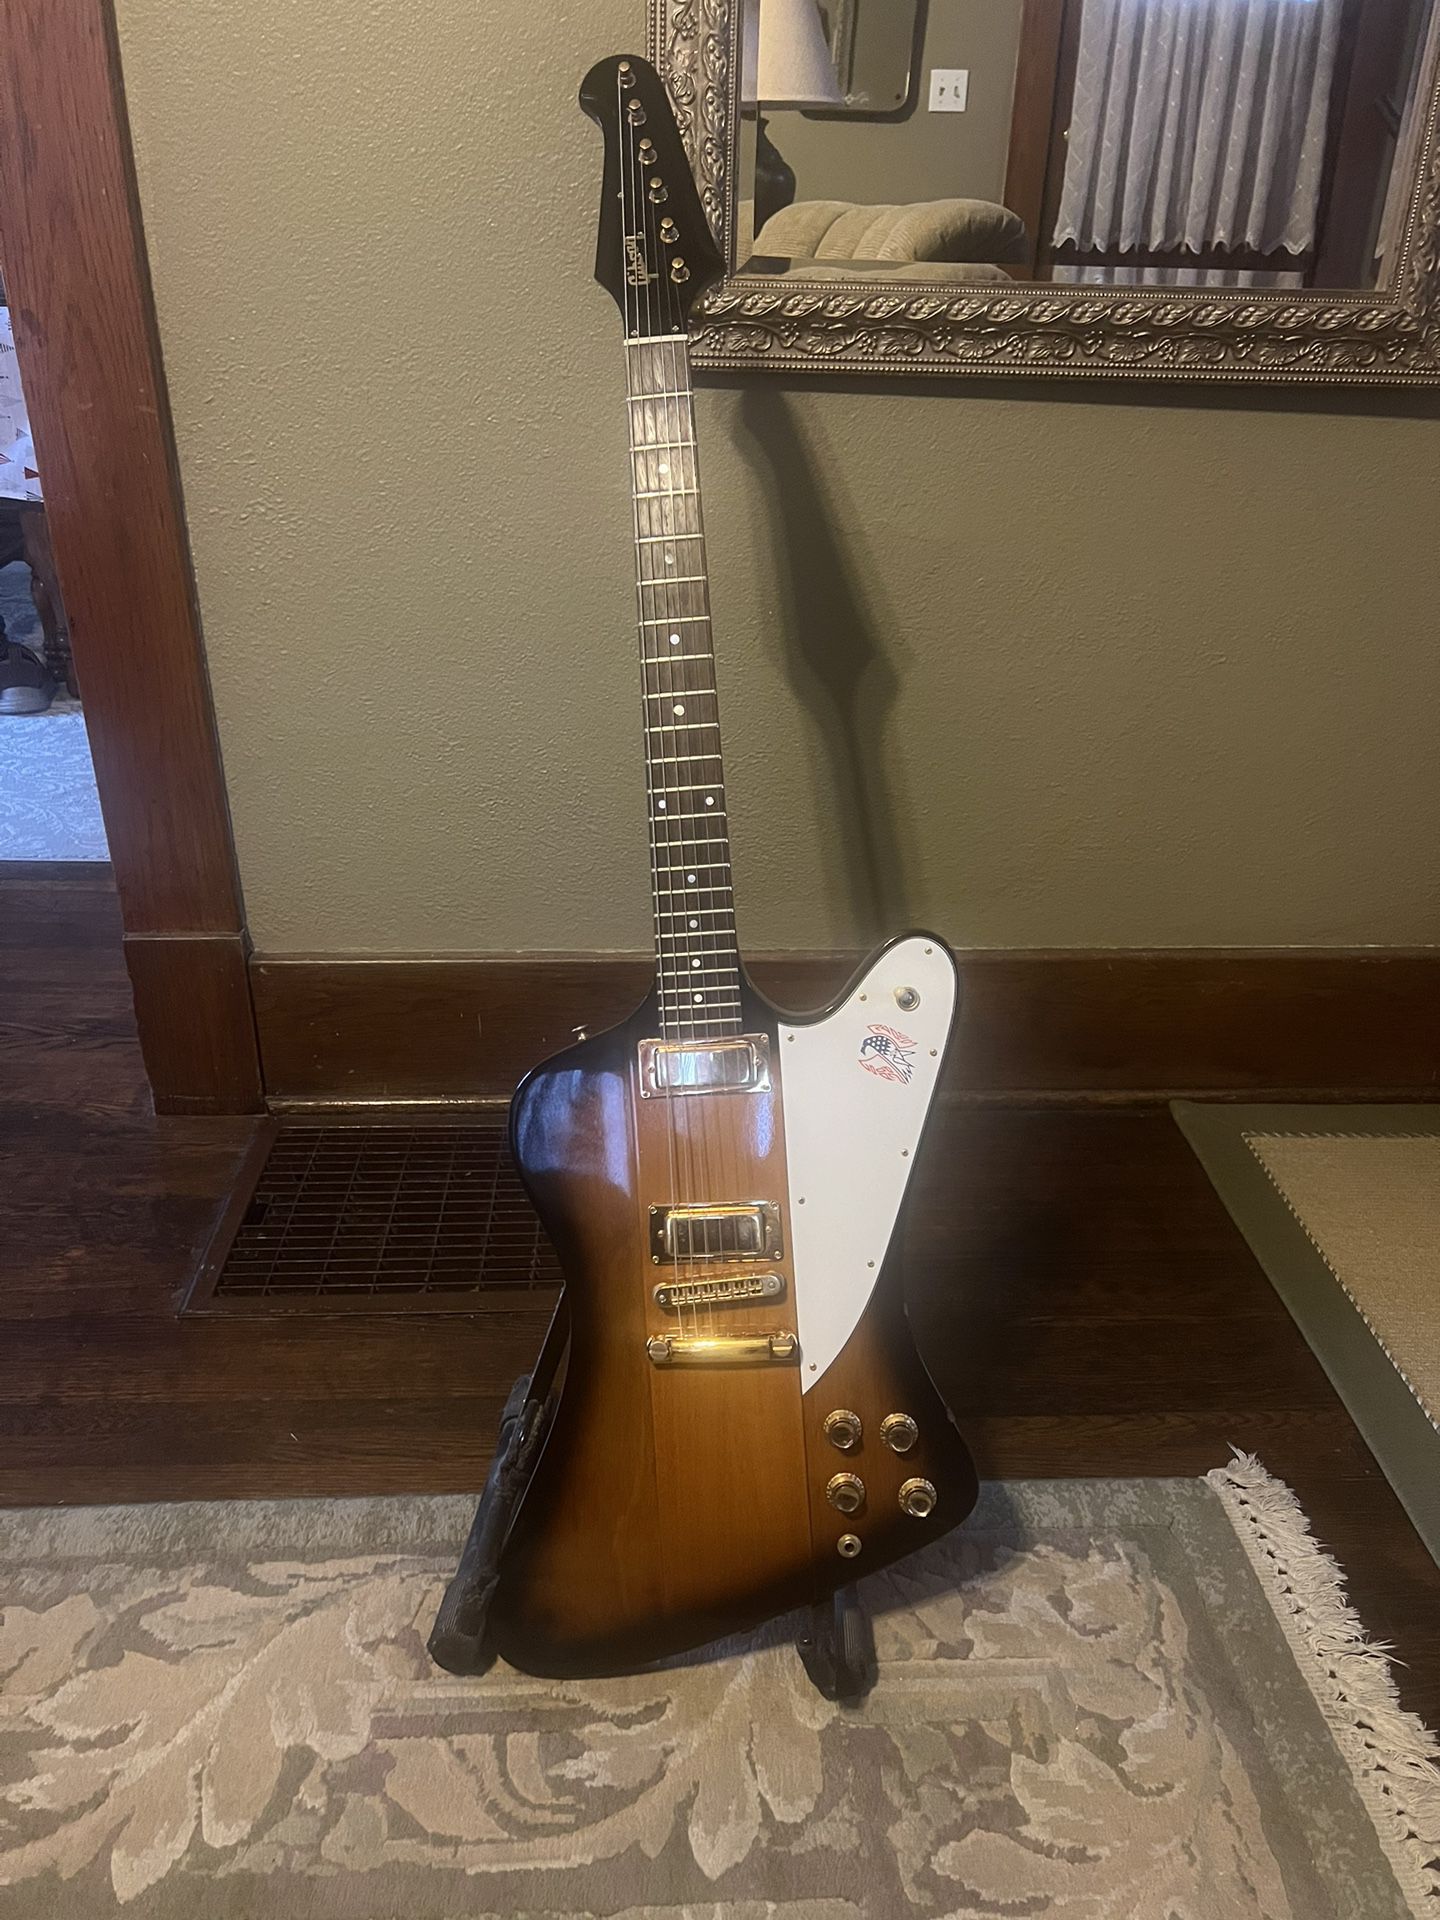 1976 Bicentennial Gibson Firebird Guitar